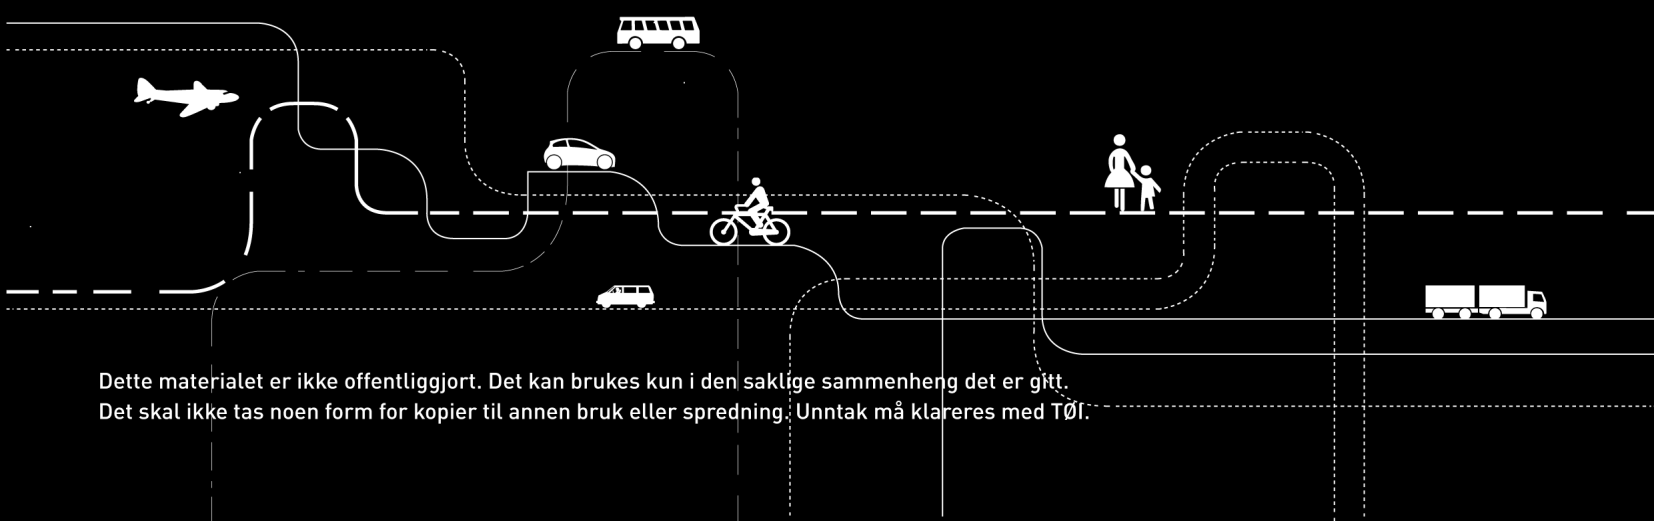 Arbeidsdokument 50727 Oslo 11.11.2014 4099 NTP-18 Frode Longva Kriterier for parkeringspolitikk i Bymiljøavtalene - et diskusjonsnotat Innhold 1 Innledning... 3 2 Hva vet vi om parkering og transport?